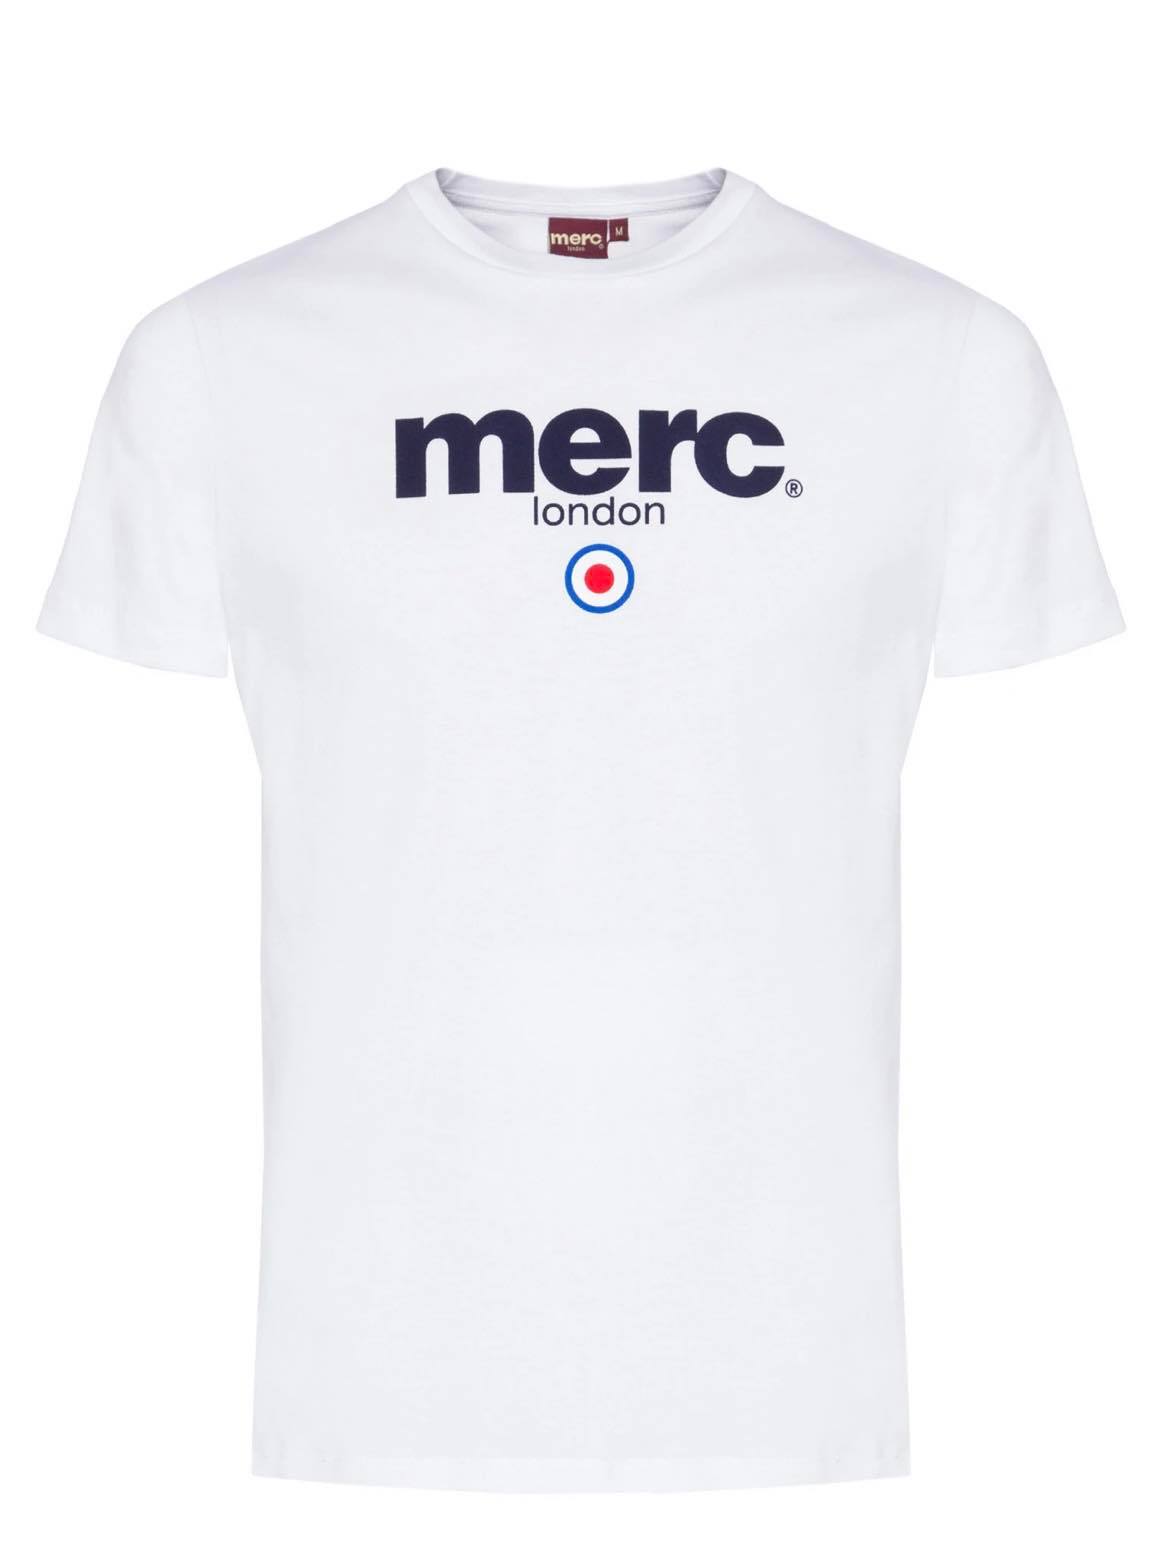 Camiseta Brighton White Merc London en Blanco - Maistendencia